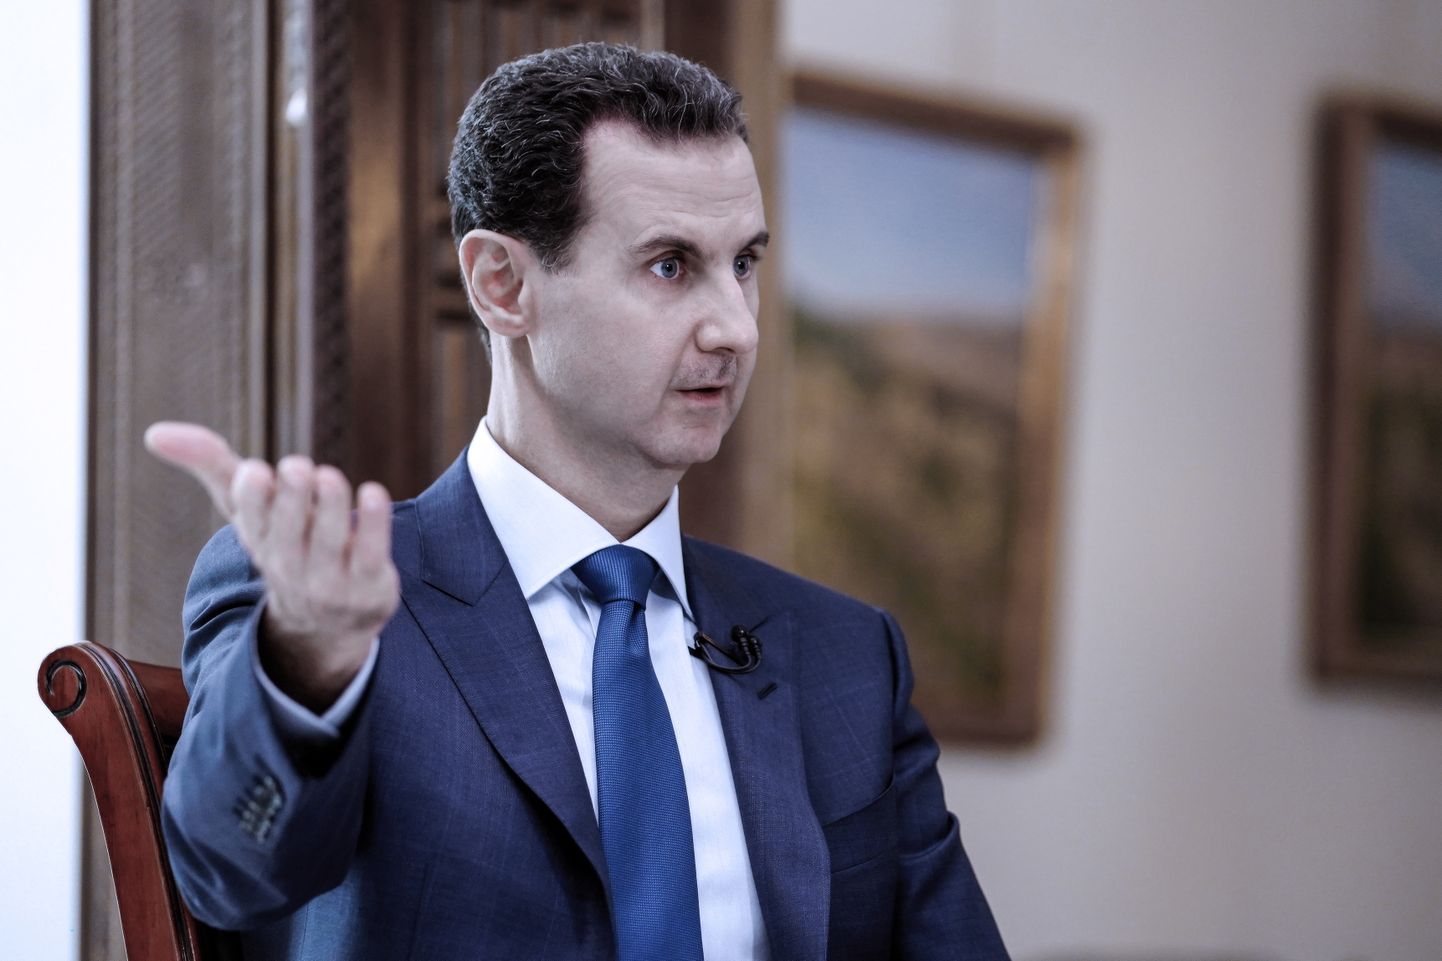 Башар Асад.